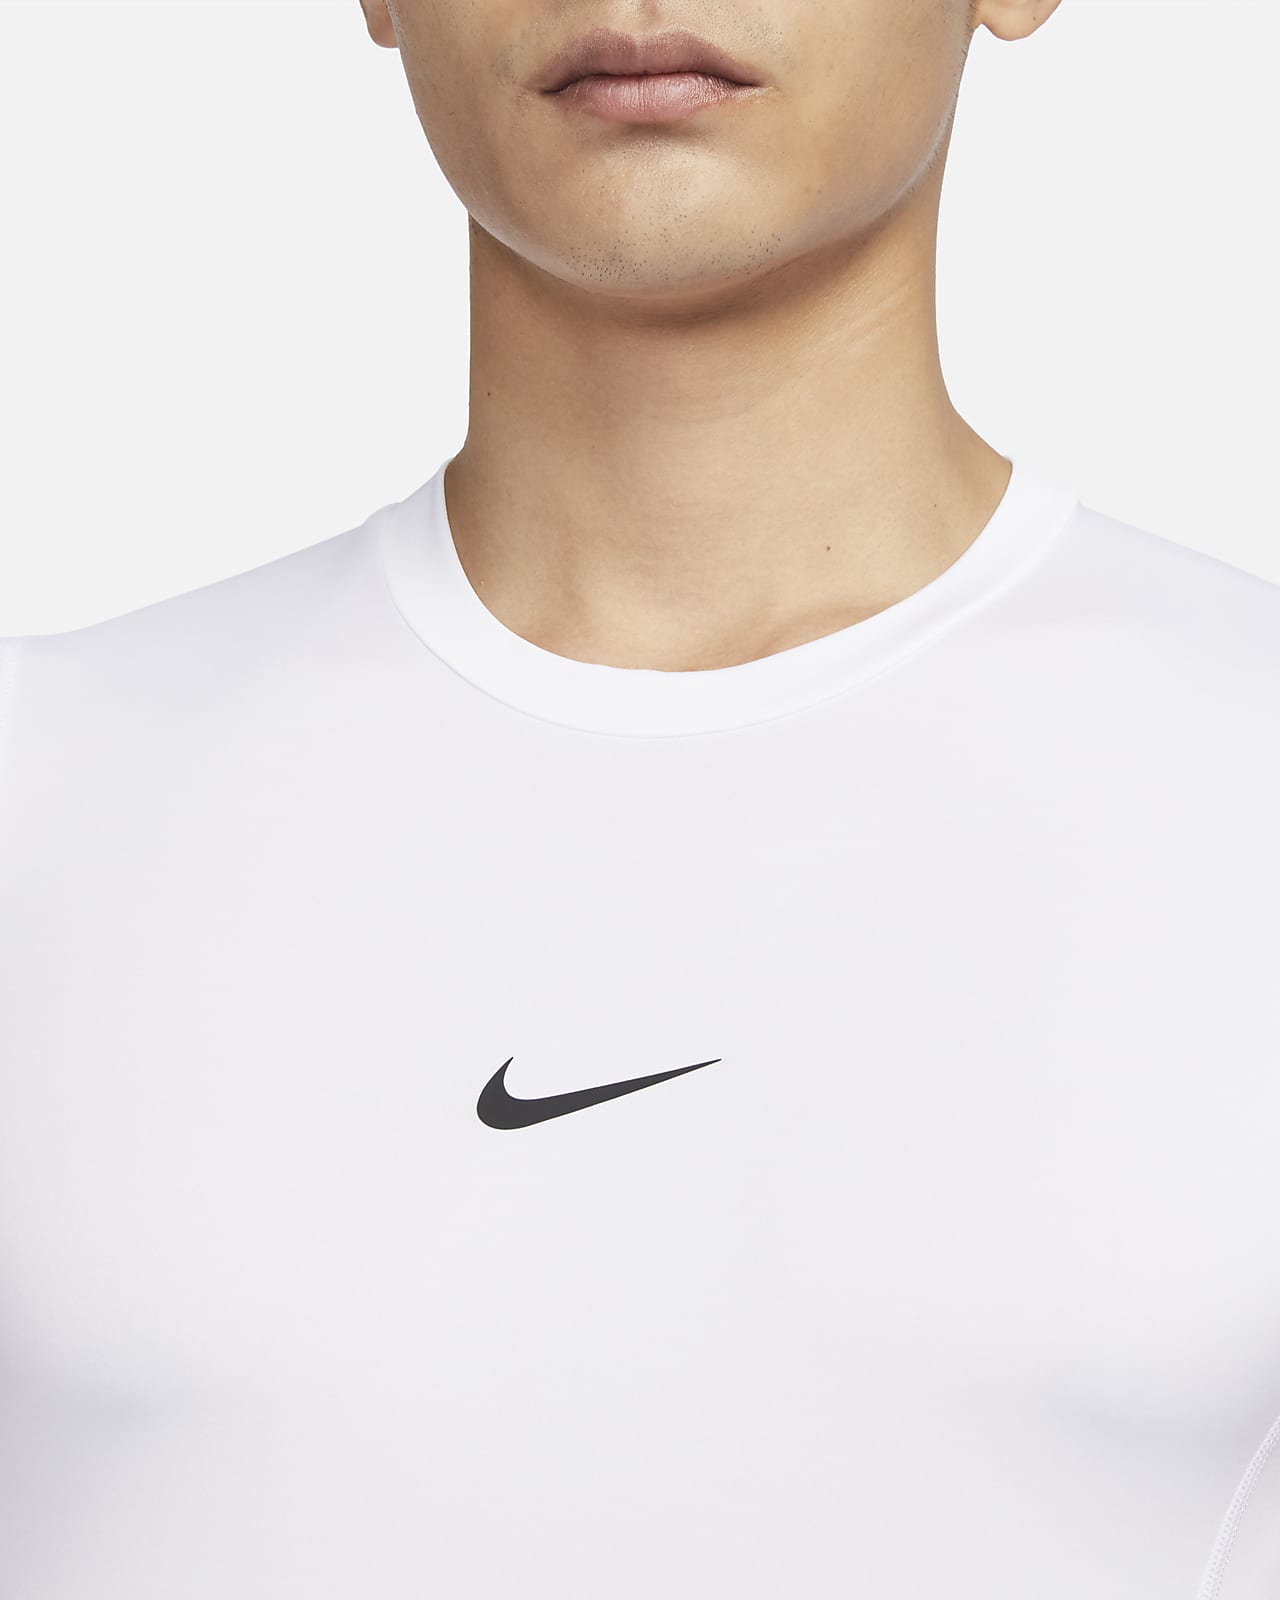 Nike Pro Men's Dri-FIT Slim Sleeveless Top